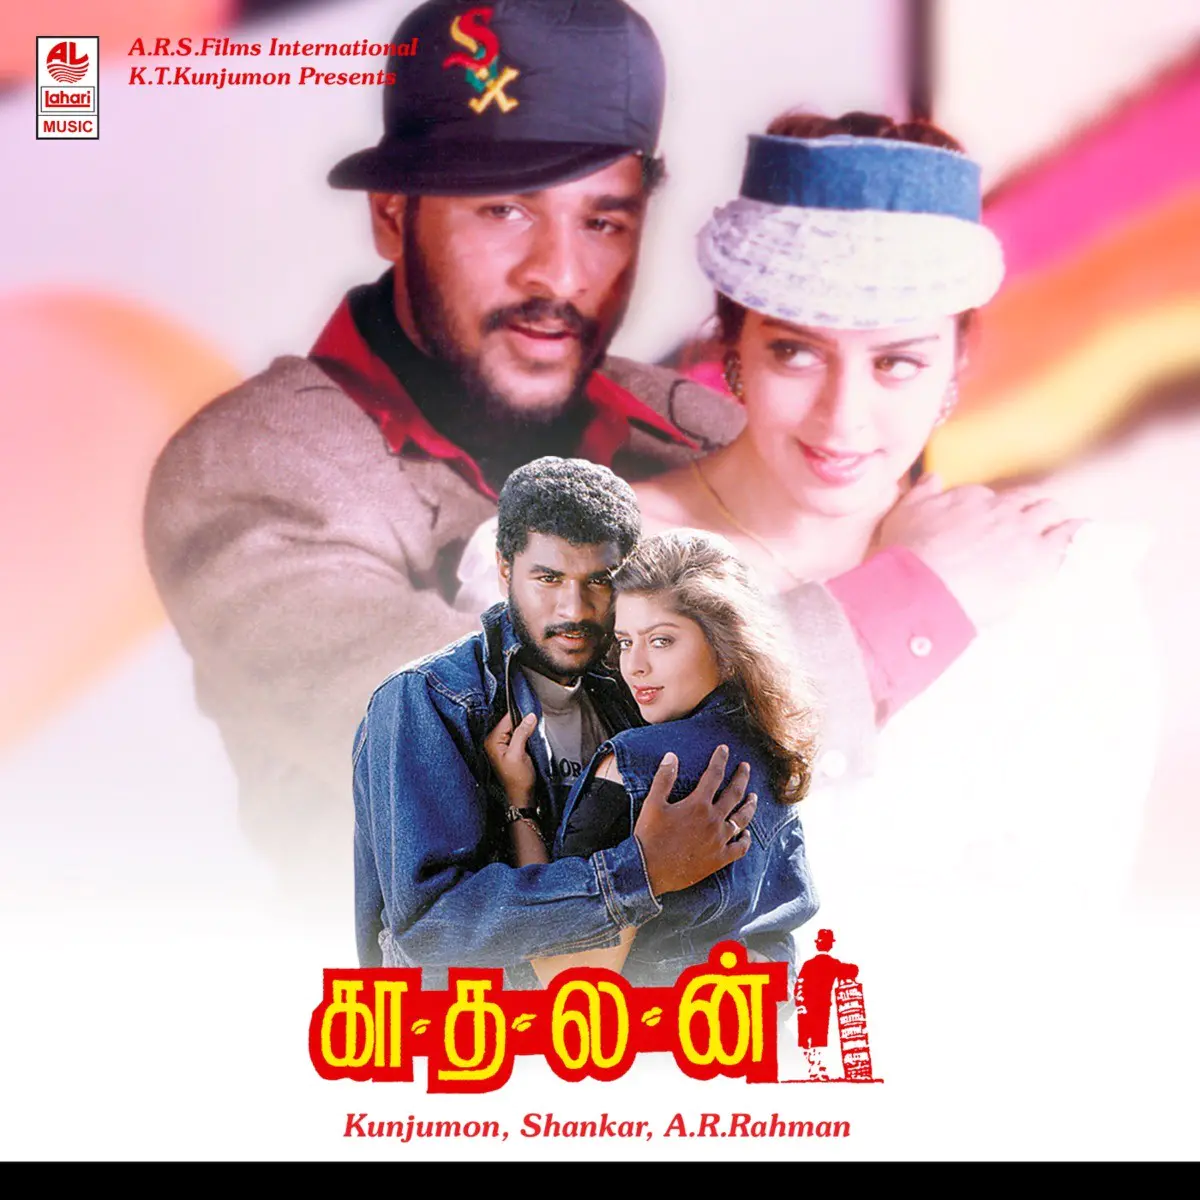 Kaadhalan Songs Download Tamil Movie Kaadhalan Mp3 Songs Online Free On Gaana Com Thee pidikka anushka, prem gi amaren 4:35. tamil movie kaadhalan mp3 songs online